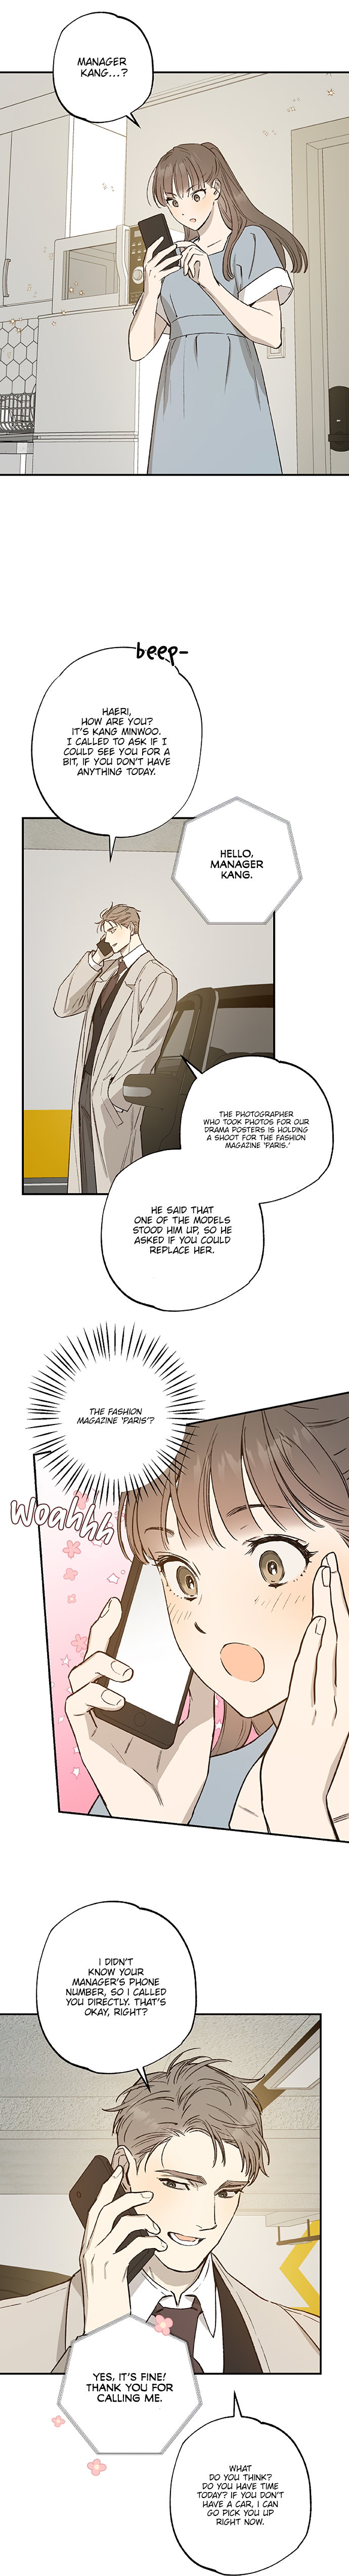 Onsaemiro - Chapter 27 Page 6